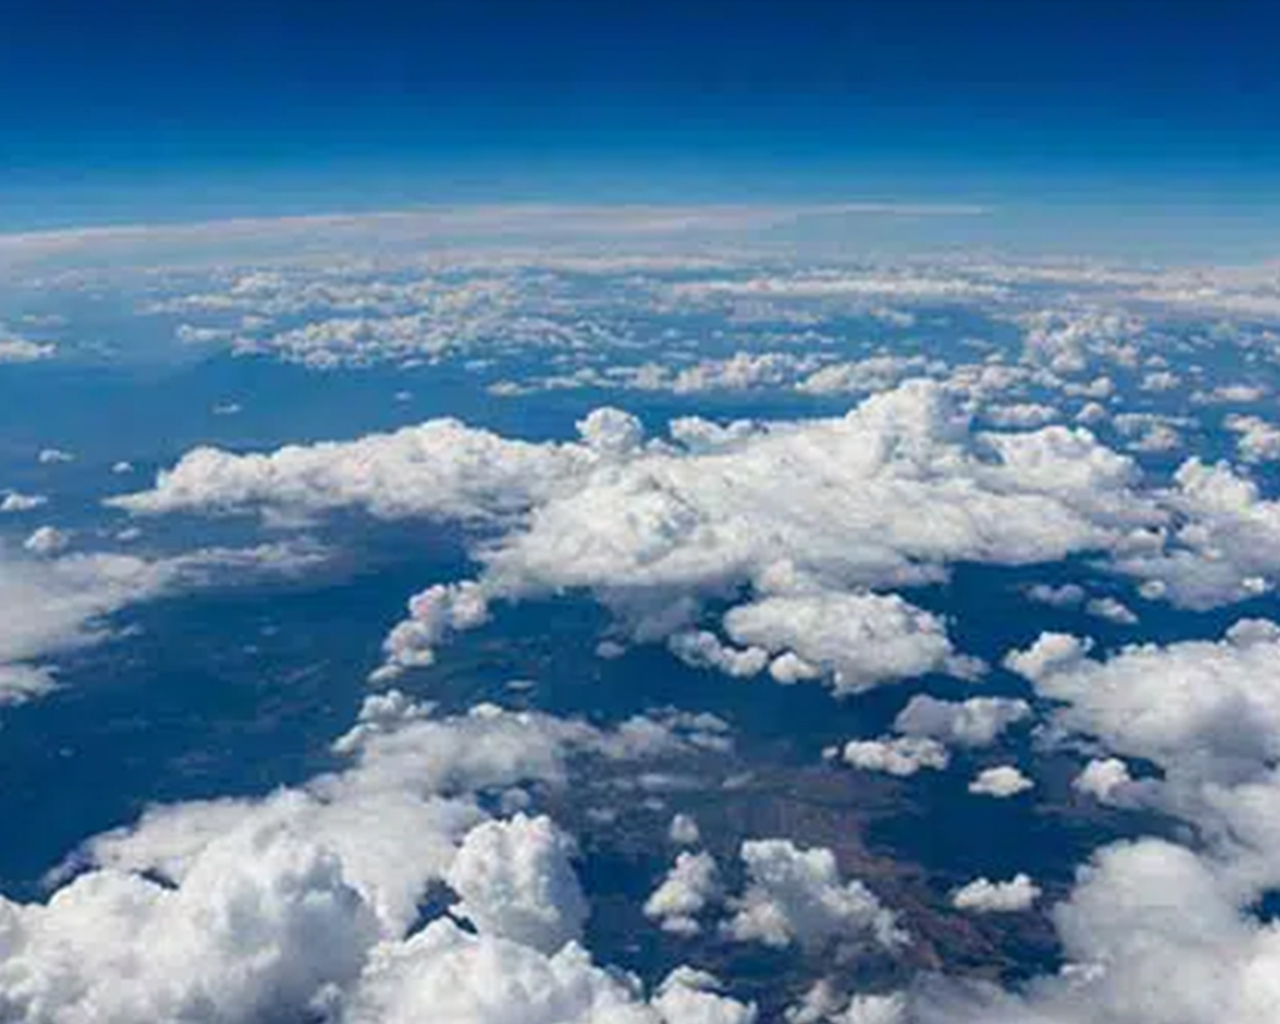 Immagine della Terra con nuvole vista dallo spazio.